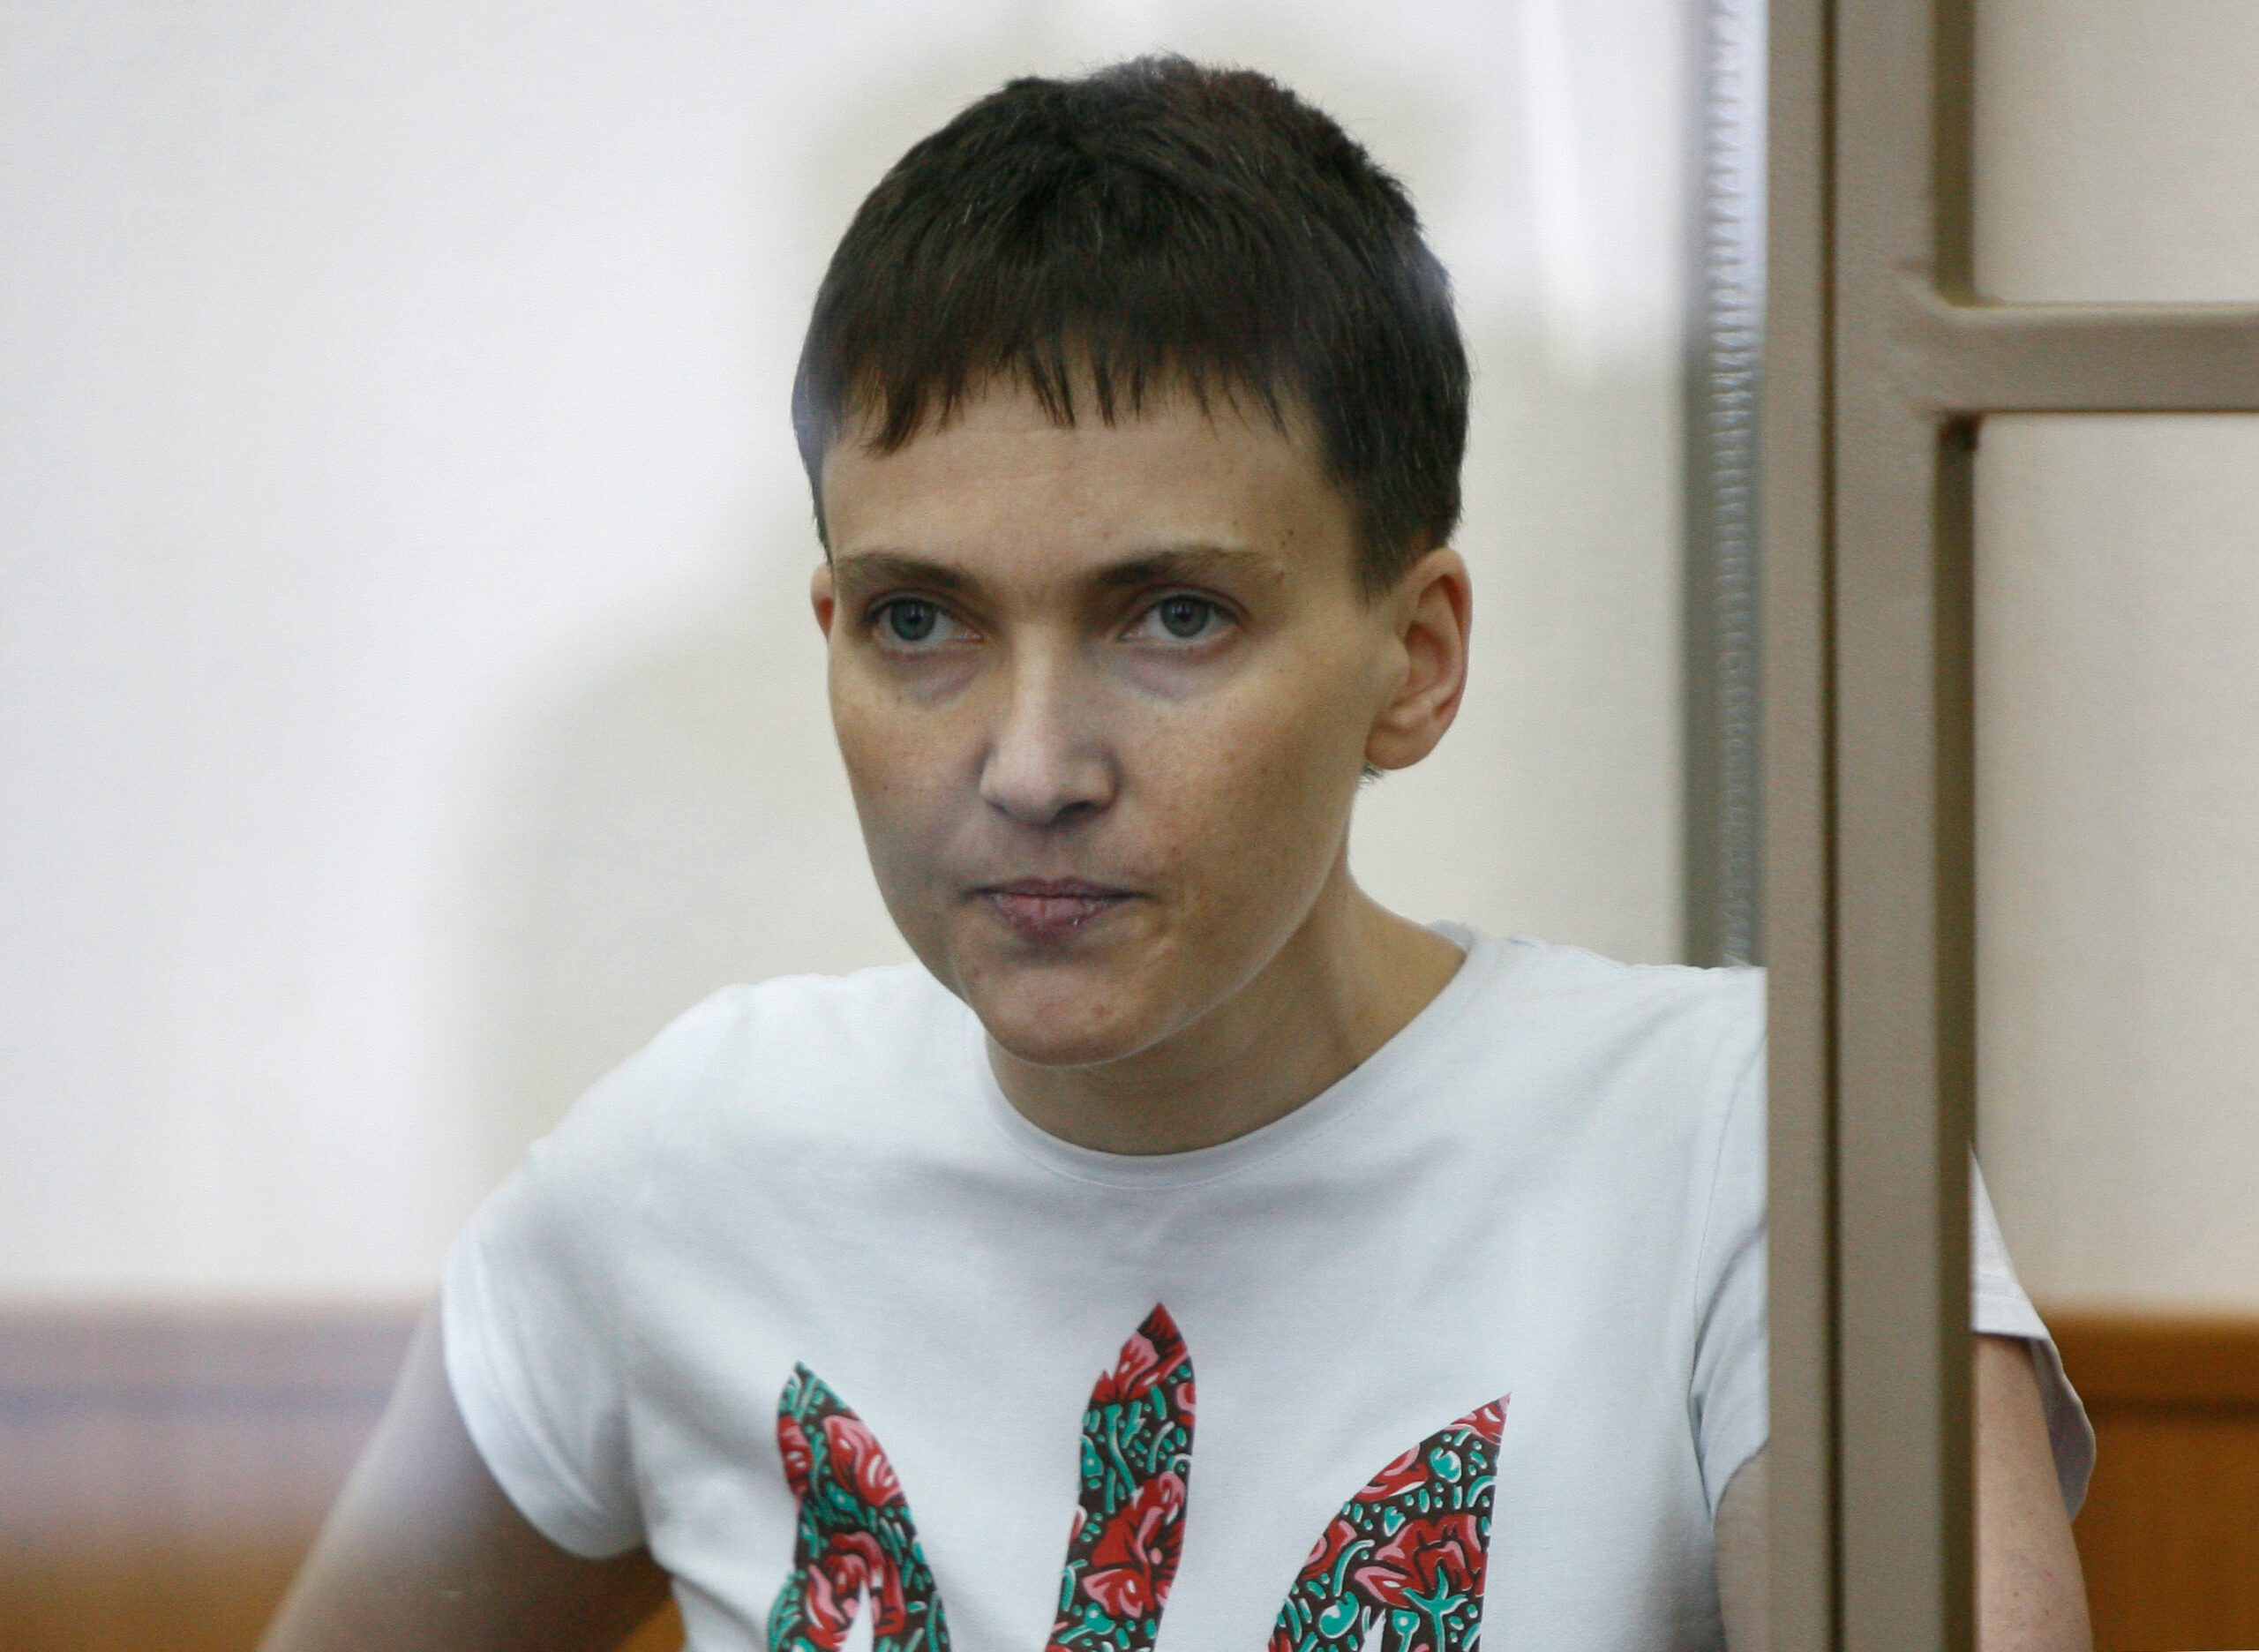 Ukraine pilot Savchenko starts refusing all food and liquids